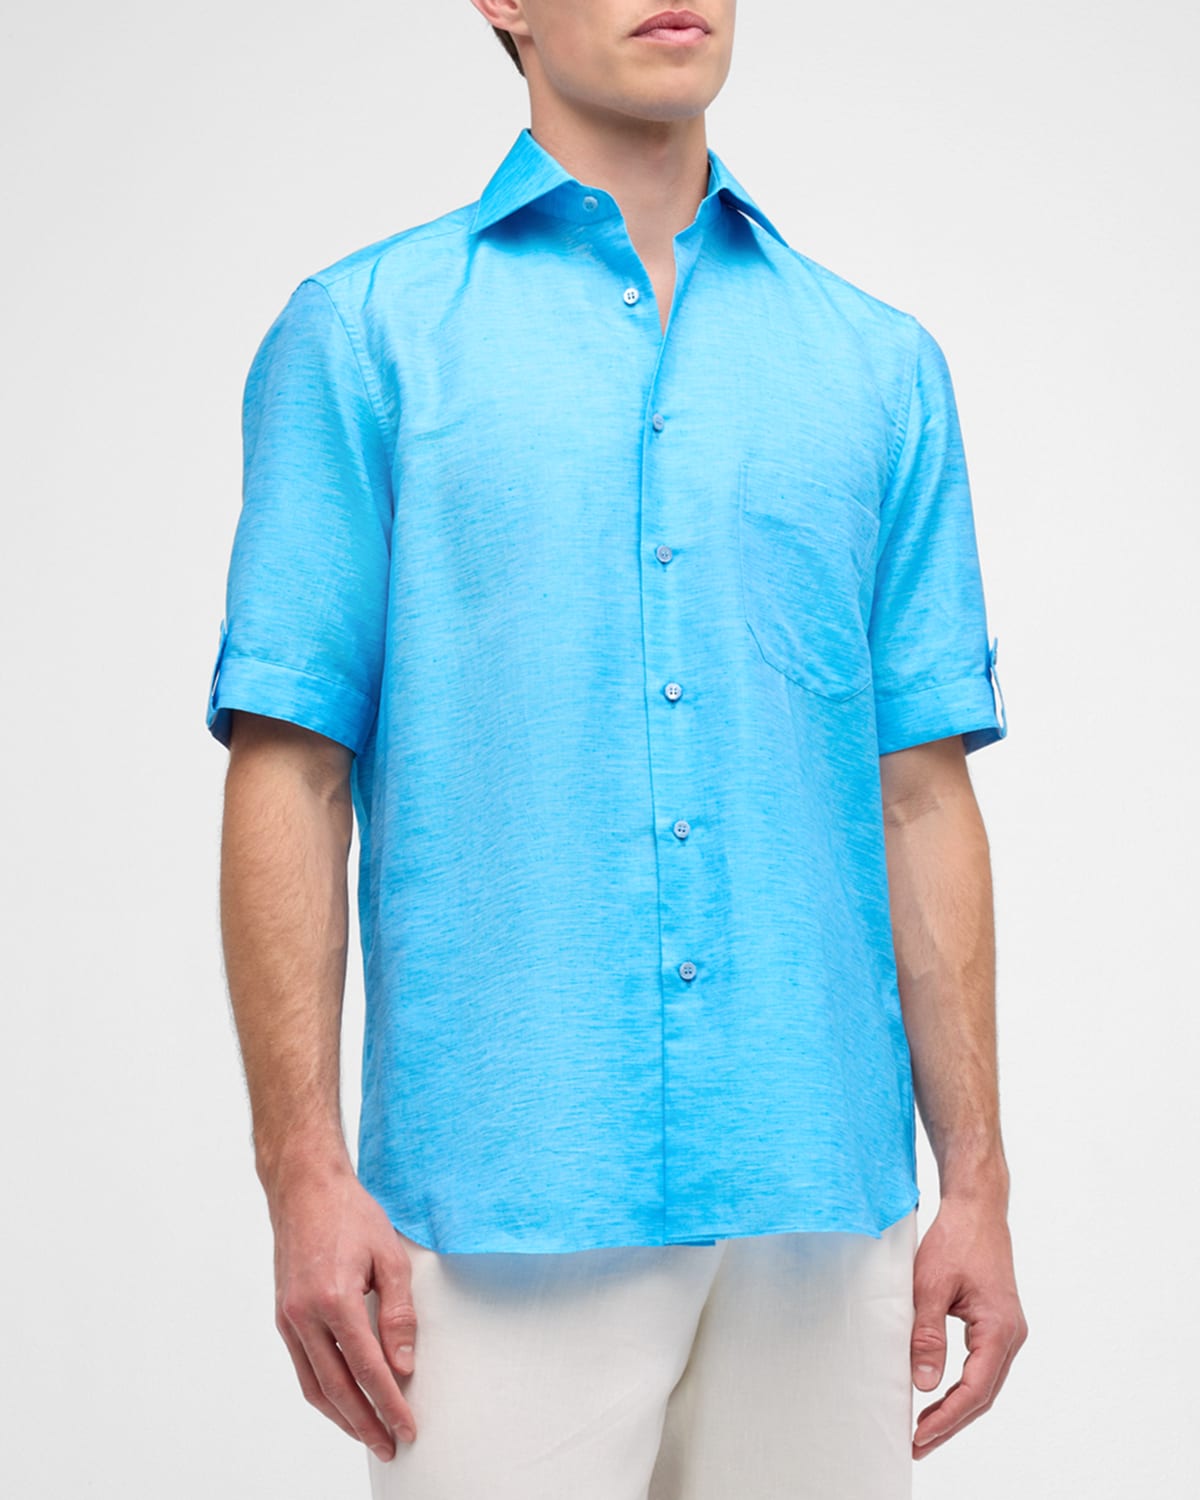 Men's Cotton Short-Sleeve Shirt